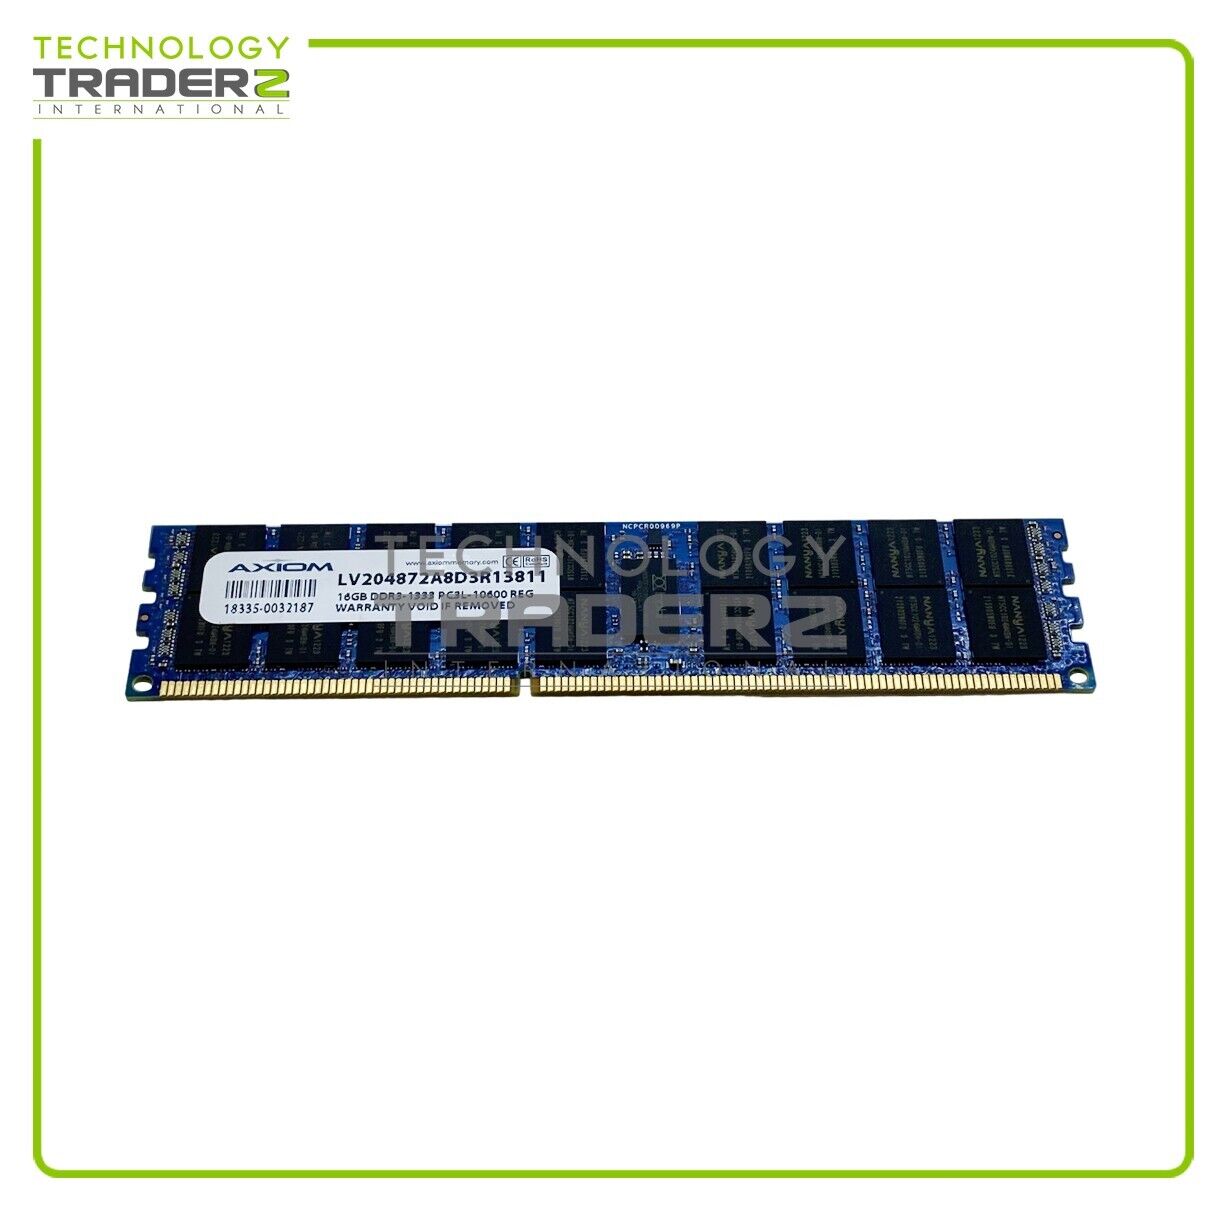 LV204872A8D3R13811 Axiom 16GB PC3-10600 DDR3-1333MHz ECC REG Dual Rank Memory